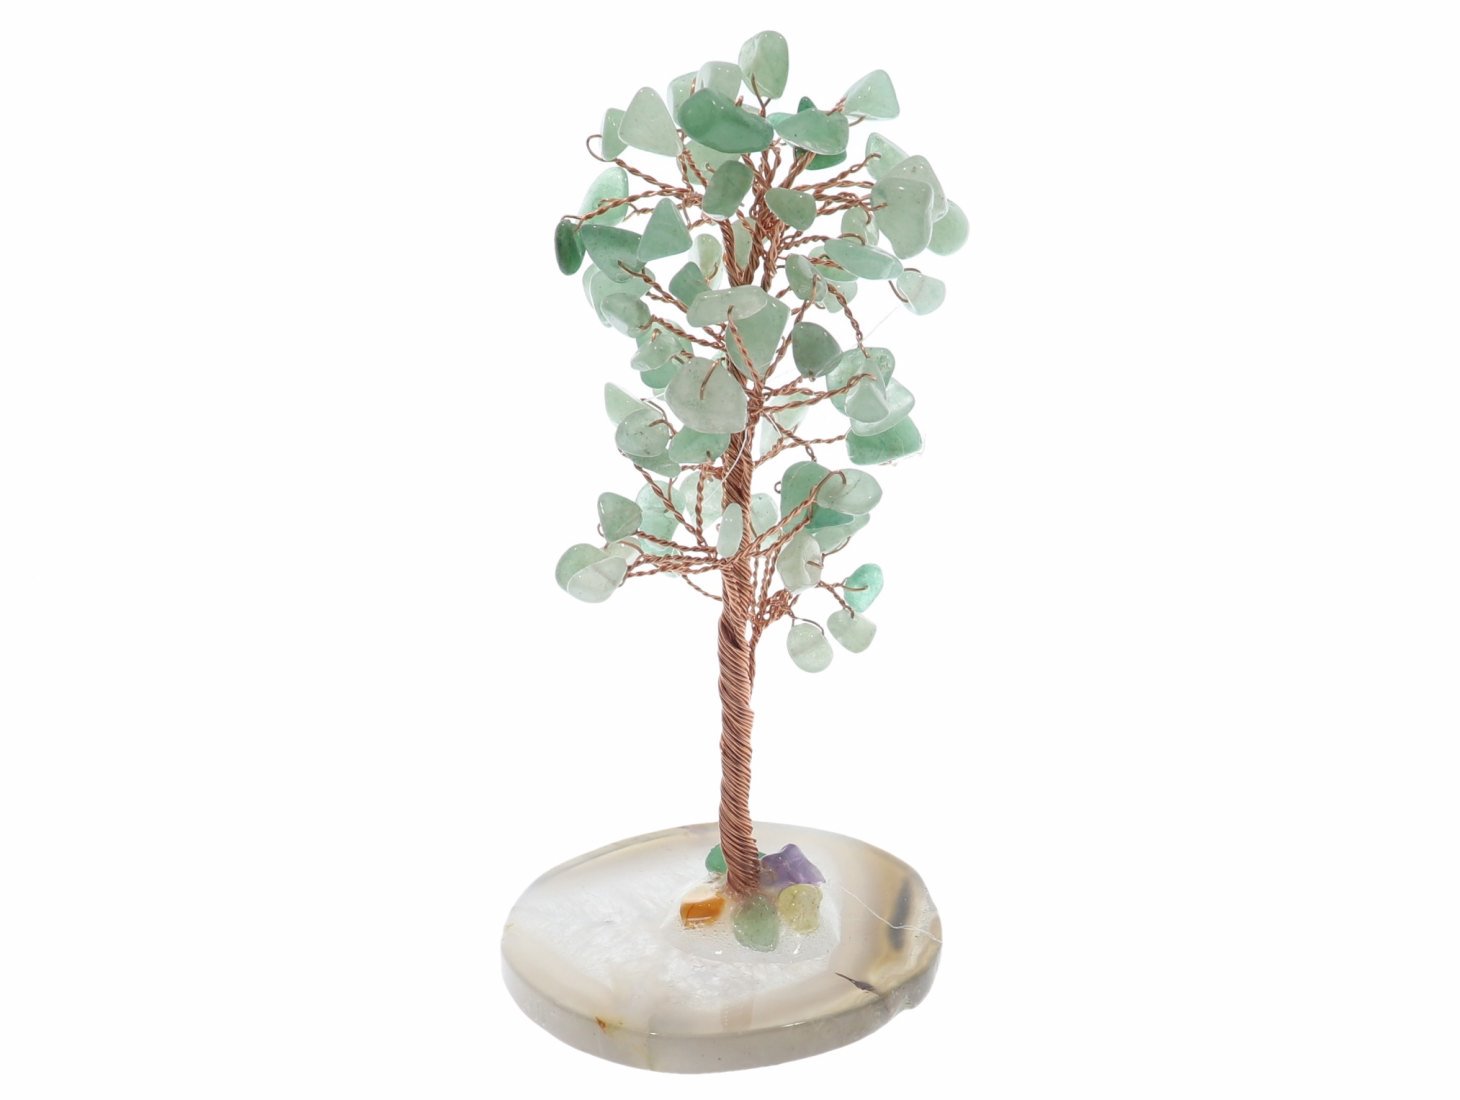 Unikat - Aventurin grün Baum mit Edelstein Splittern und Achat Scheibe Dekoration 41714